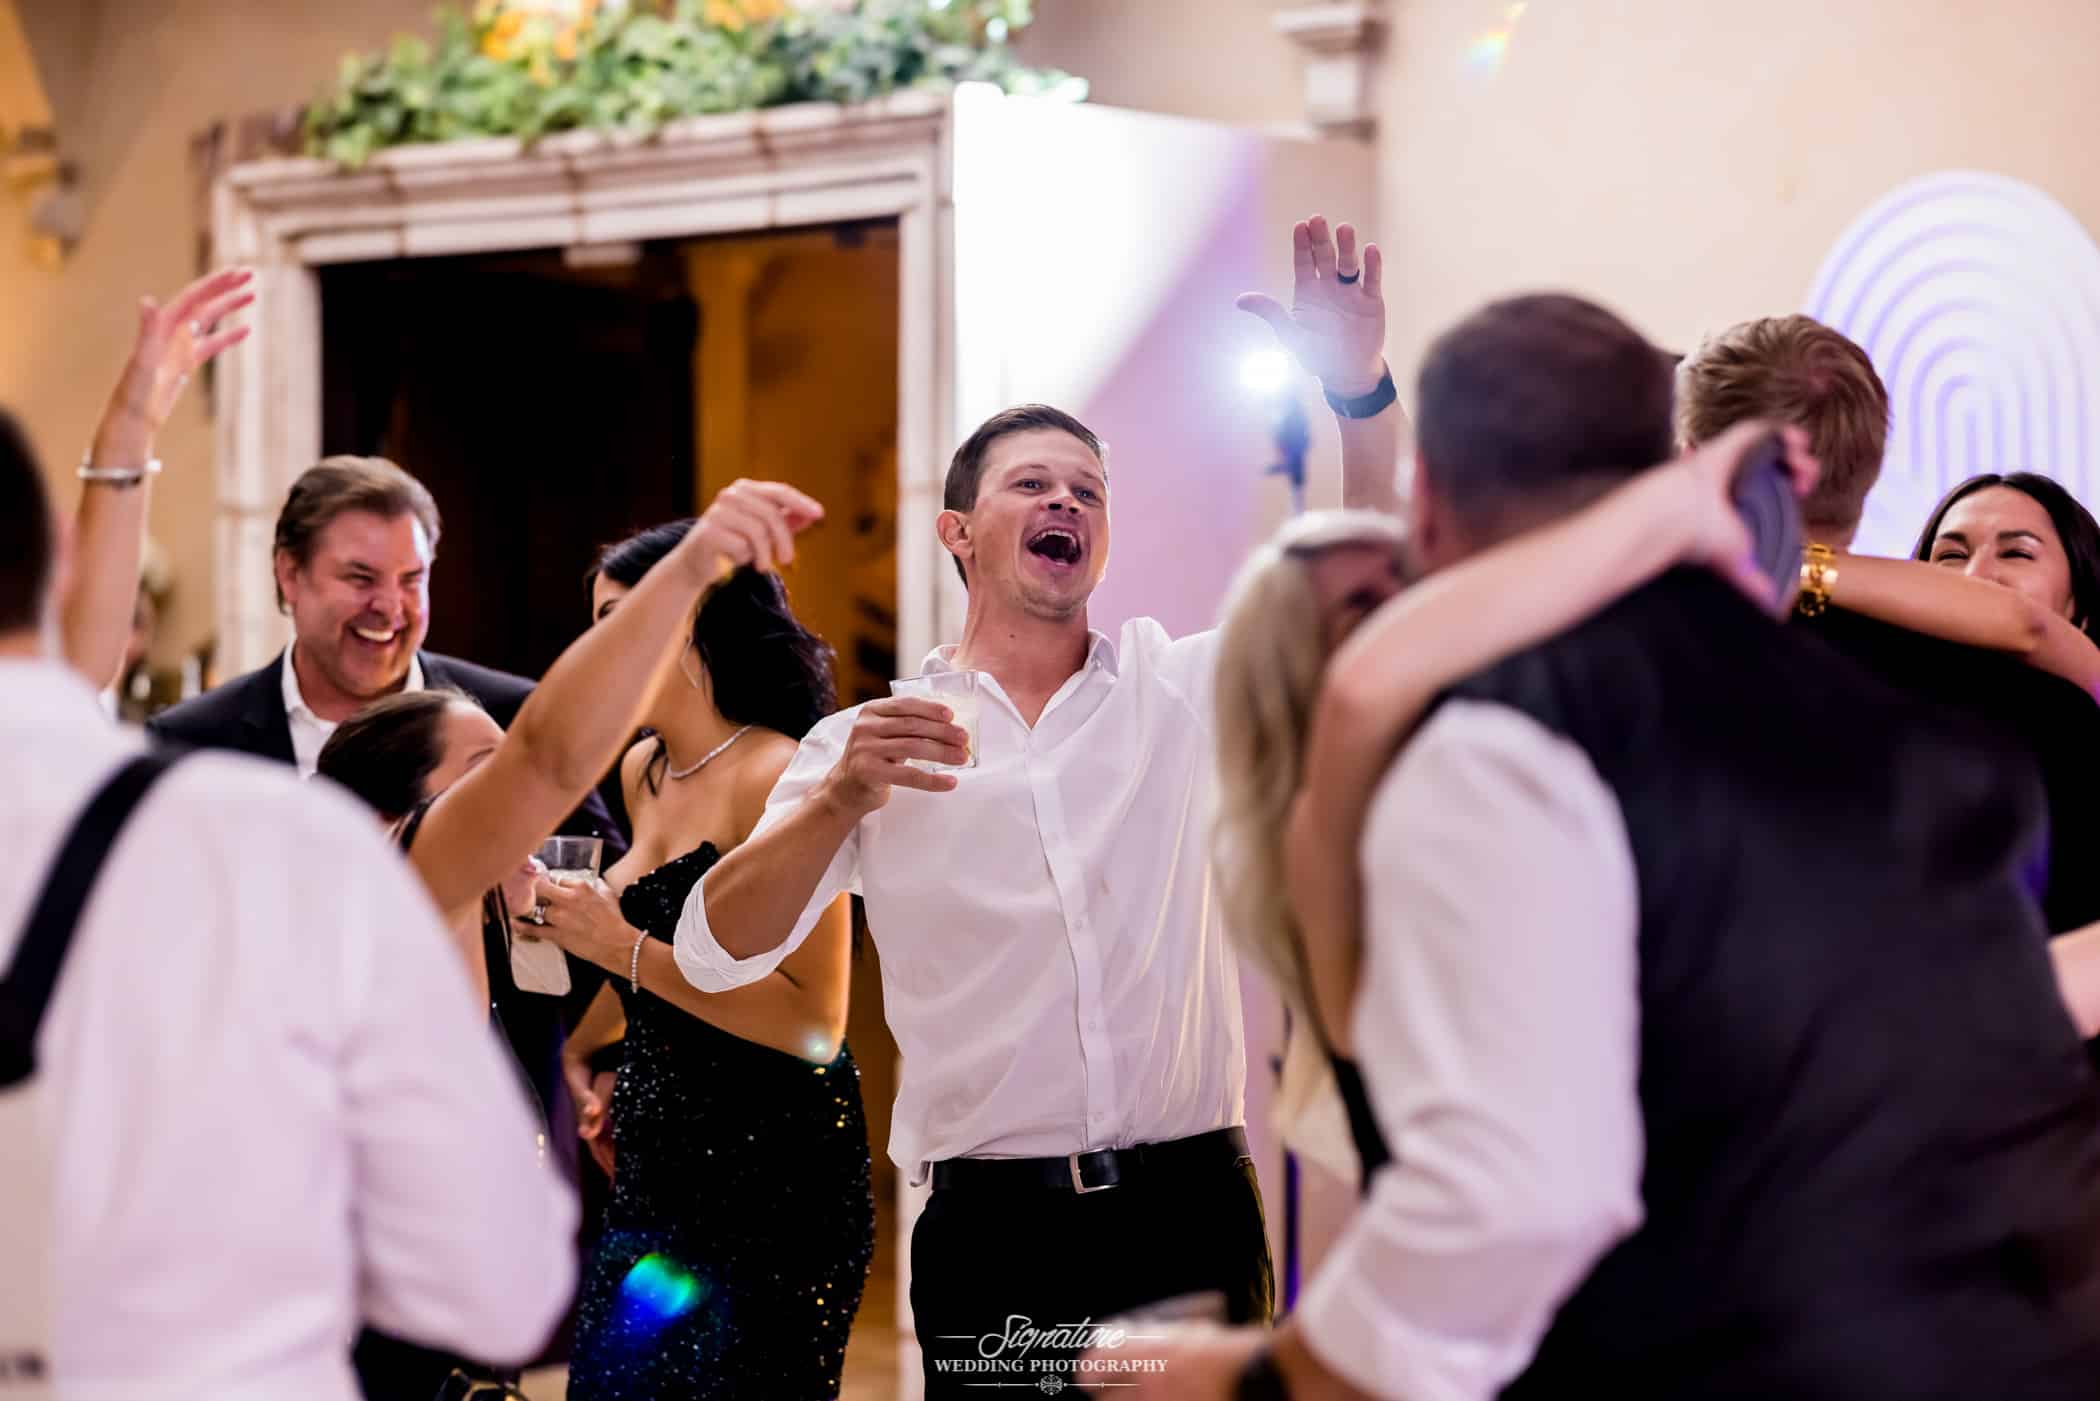 Wedding guests dancing